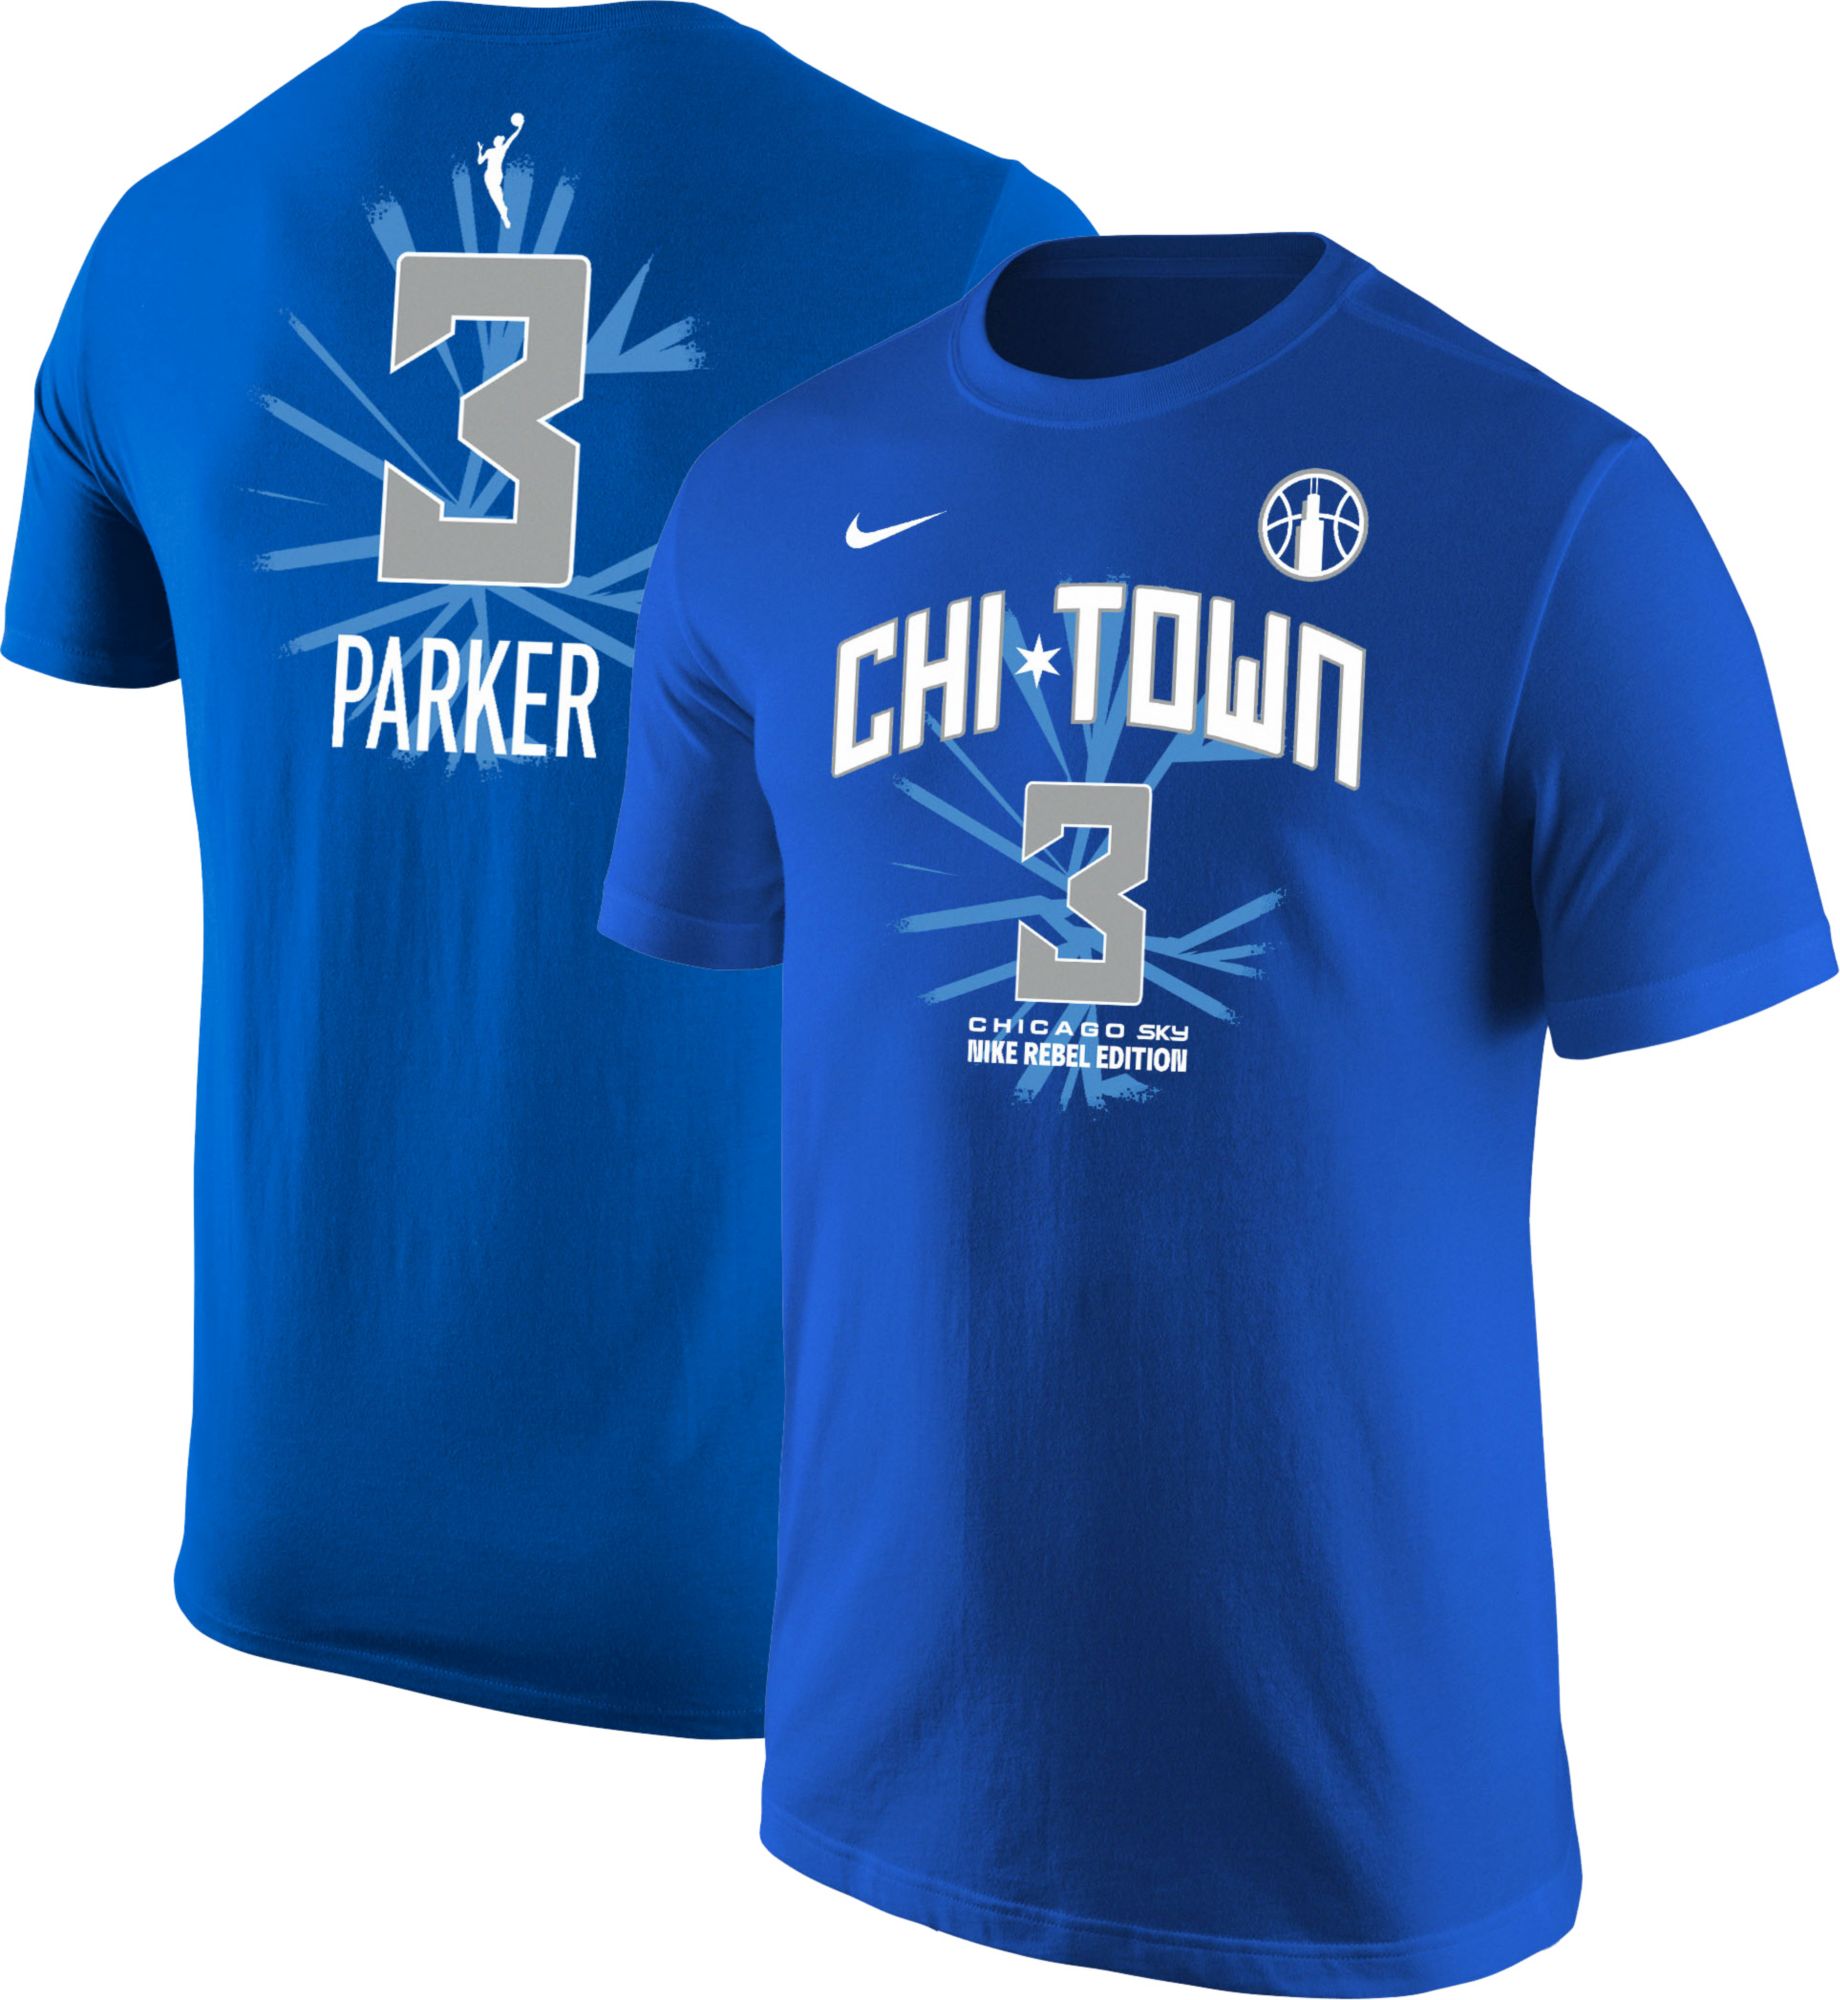 Candace Parker Jerseys, Candace Parker Shirts, Apparel, Gear